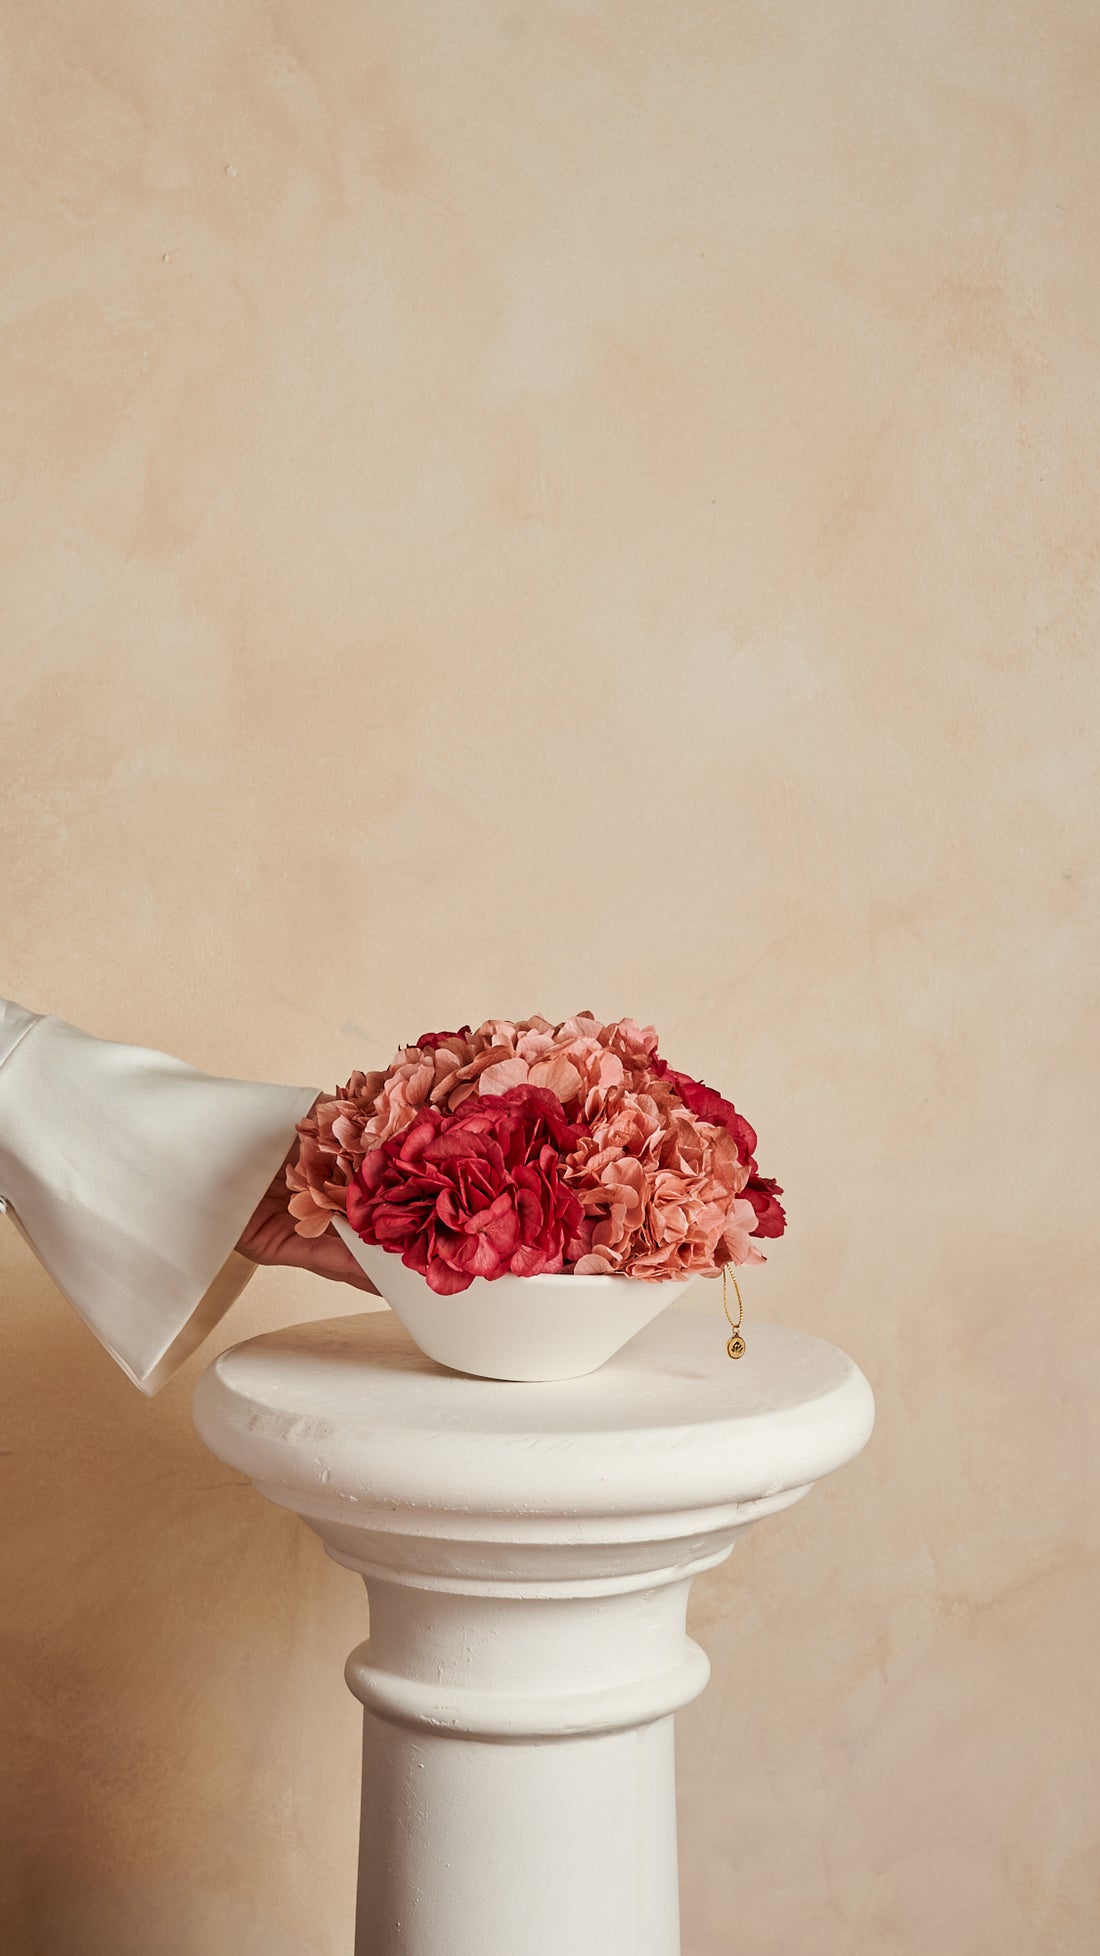 Hydrangea Bowl by La Fleur Lifetime Flowers